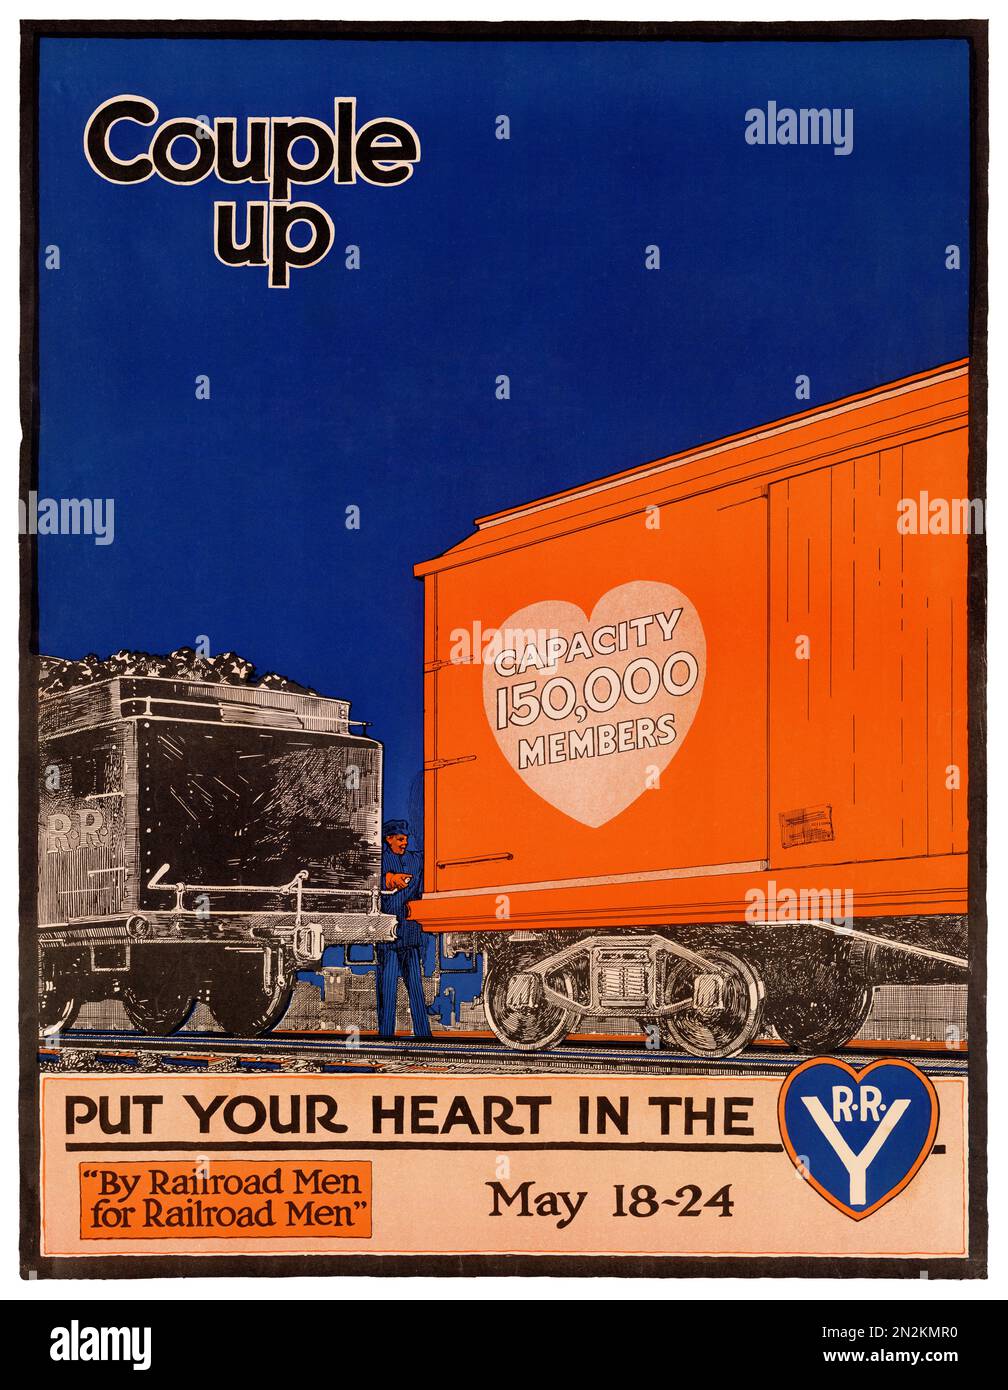 Ein Paar legt Ihr Herz in die Notaufnahme, 18.-24. Mai. Von J. F. Butler (Datum unbekannt). Poster wurde 1910 in den USA veröffentlicht. Stockfoto